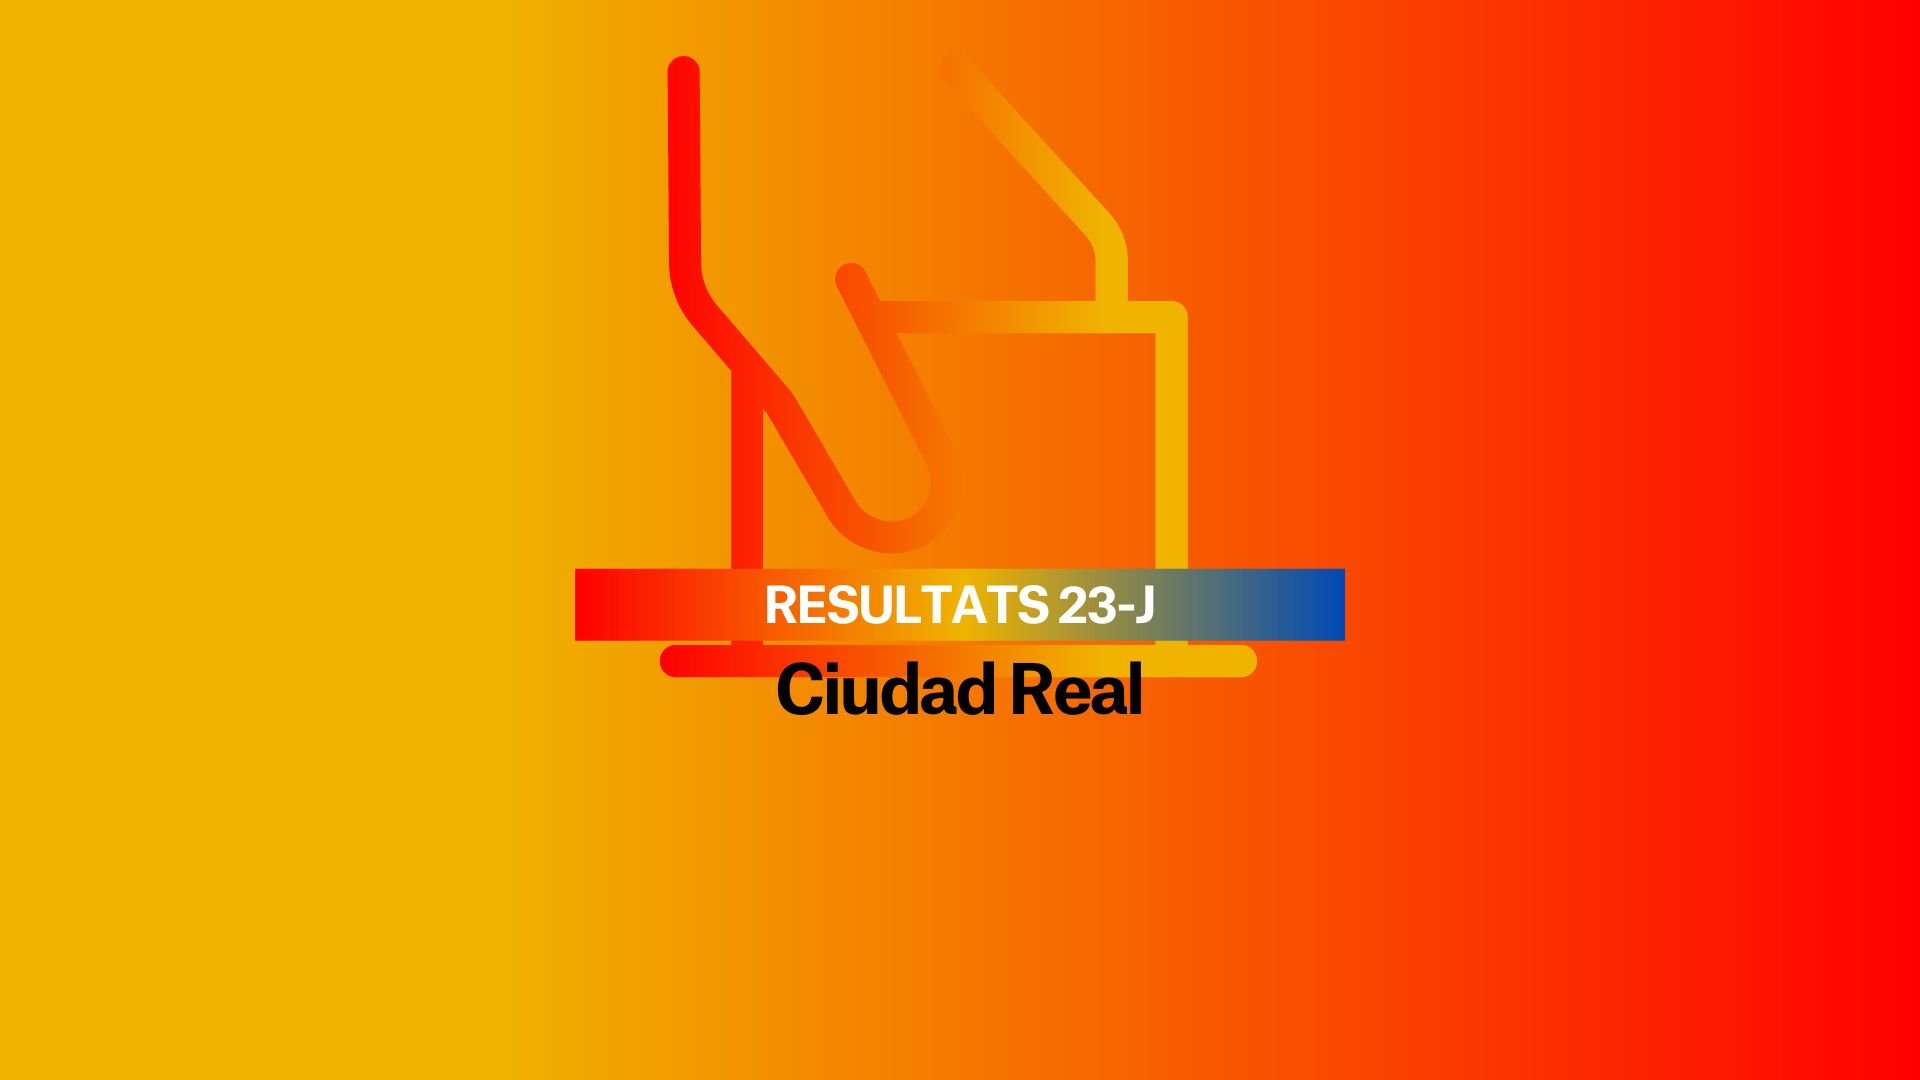 Resultados Elecciones Generales 2023 en Ciudad Real: El PP se impone en Ciudad Real